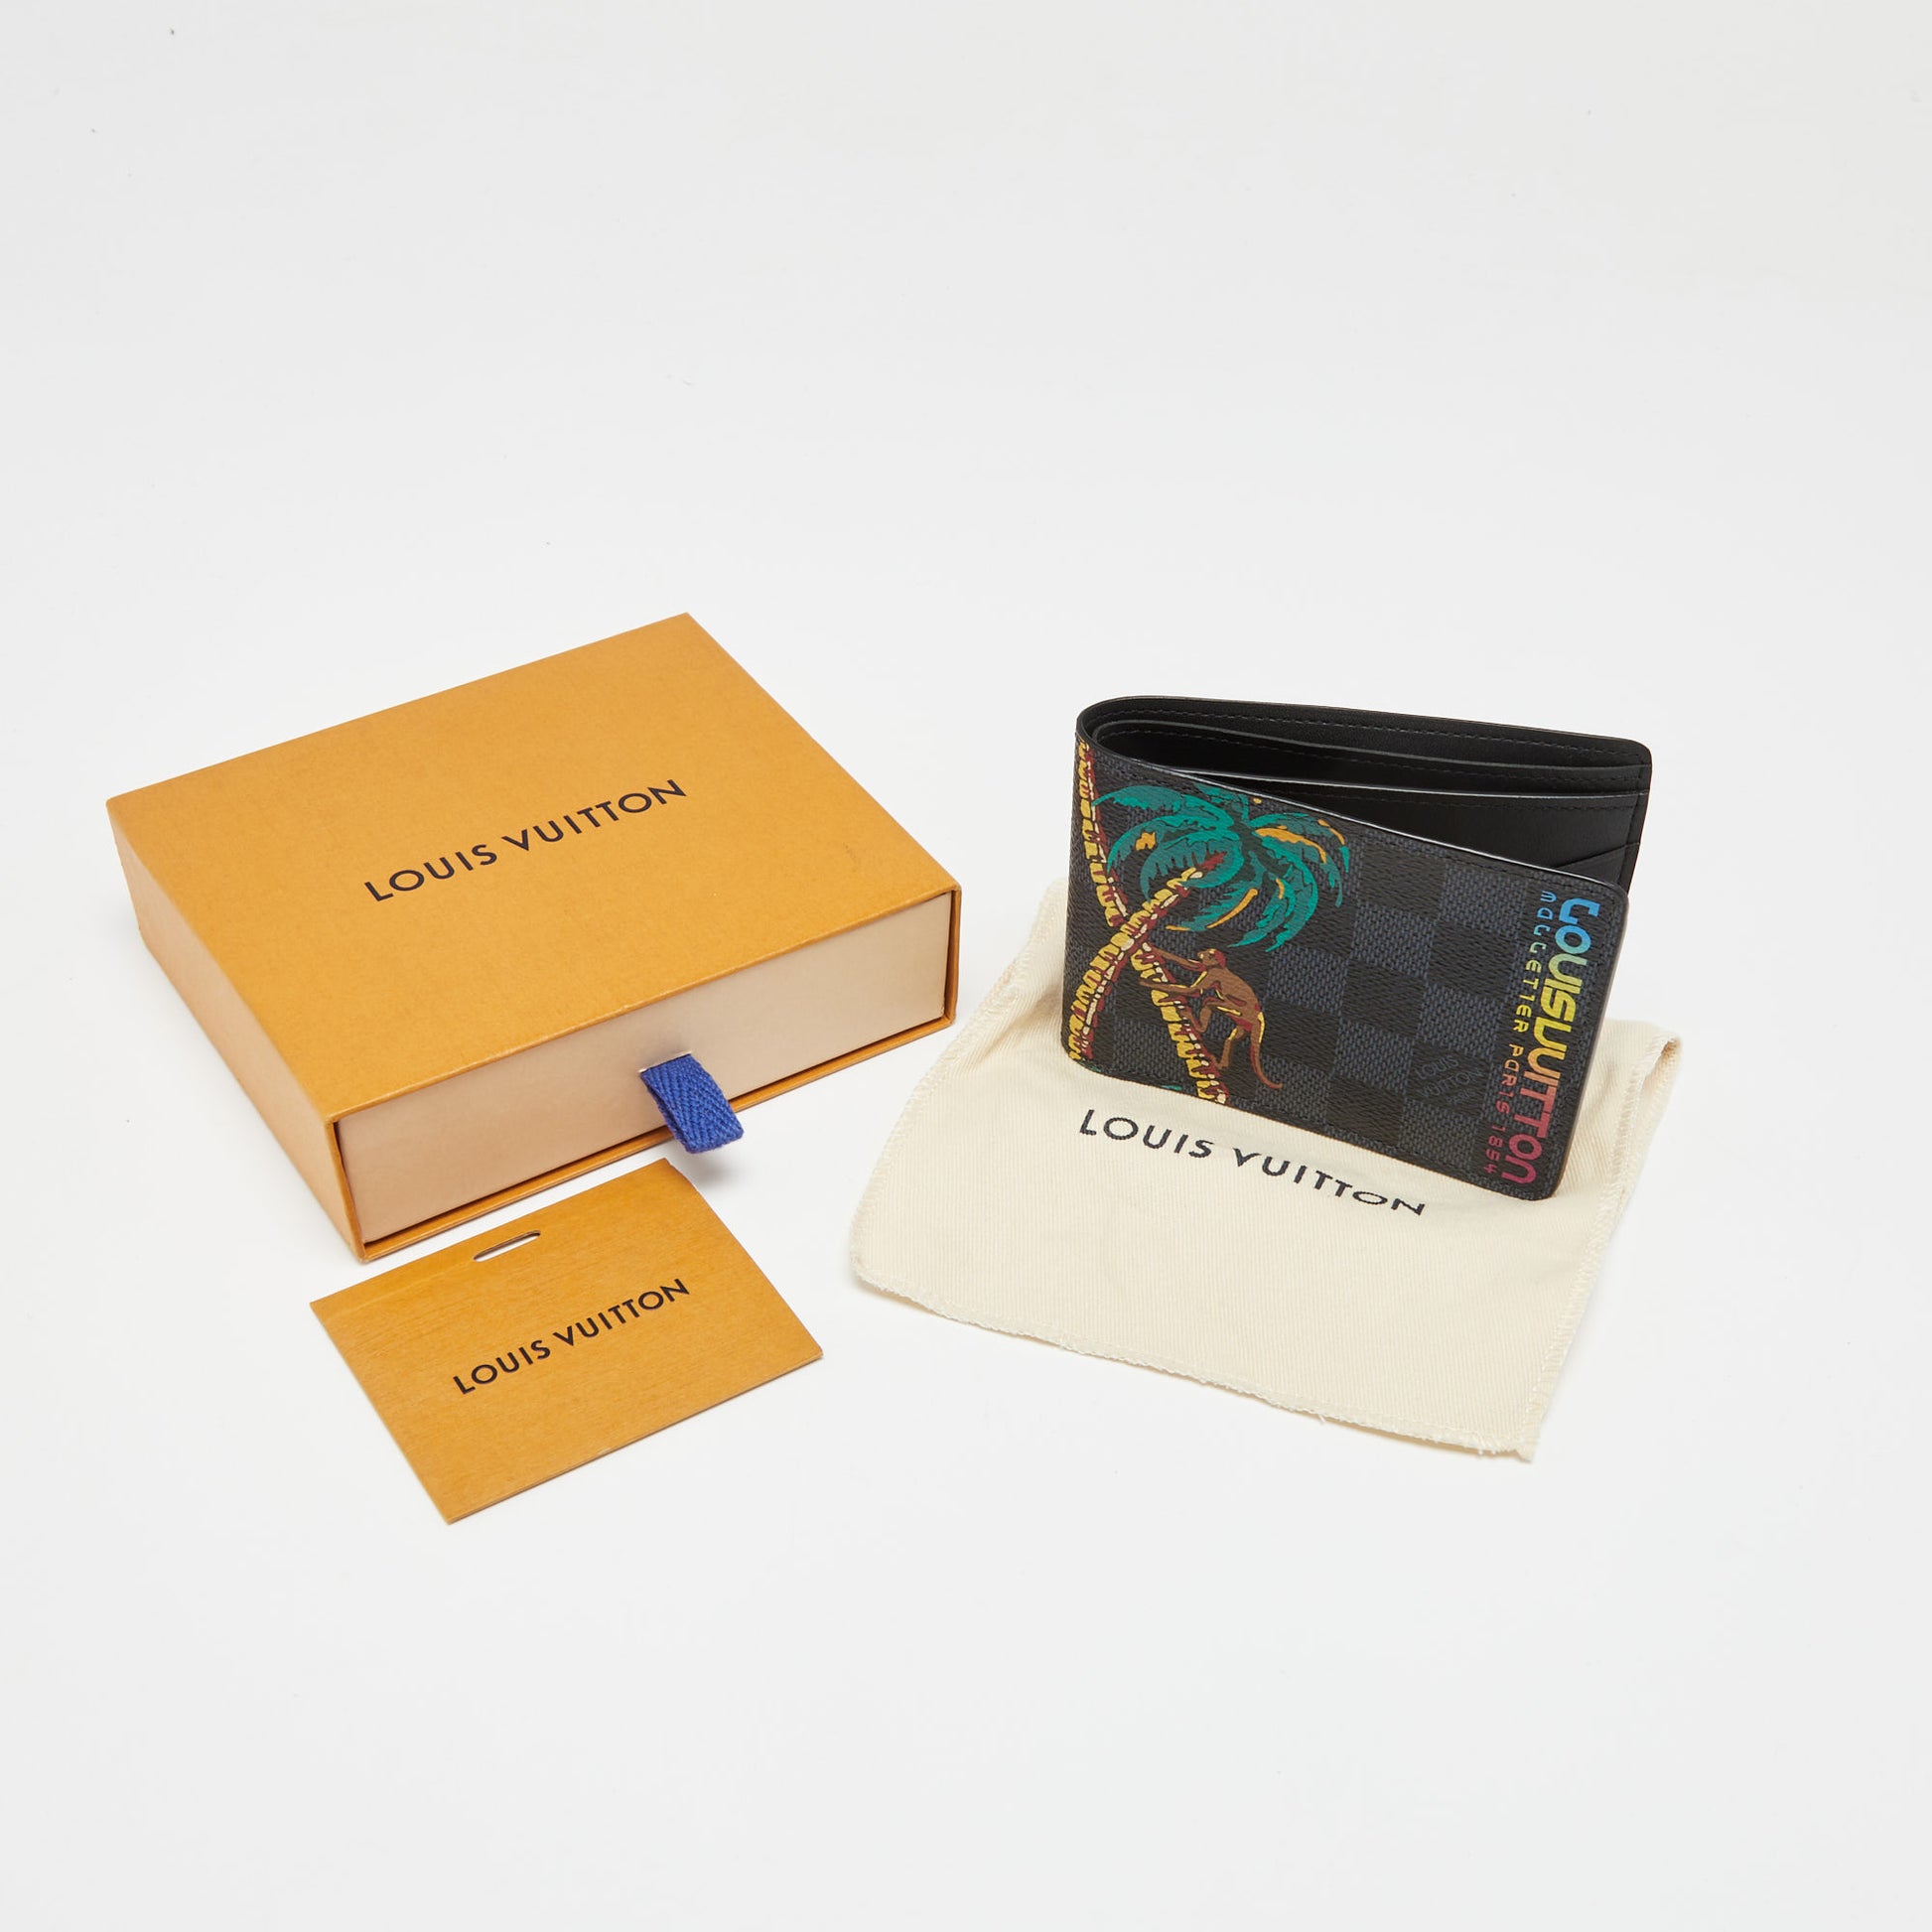 Authentic NEW Louis Vuitton Damier Graphite Envelope Business Card Hol –  Paris Station Shop